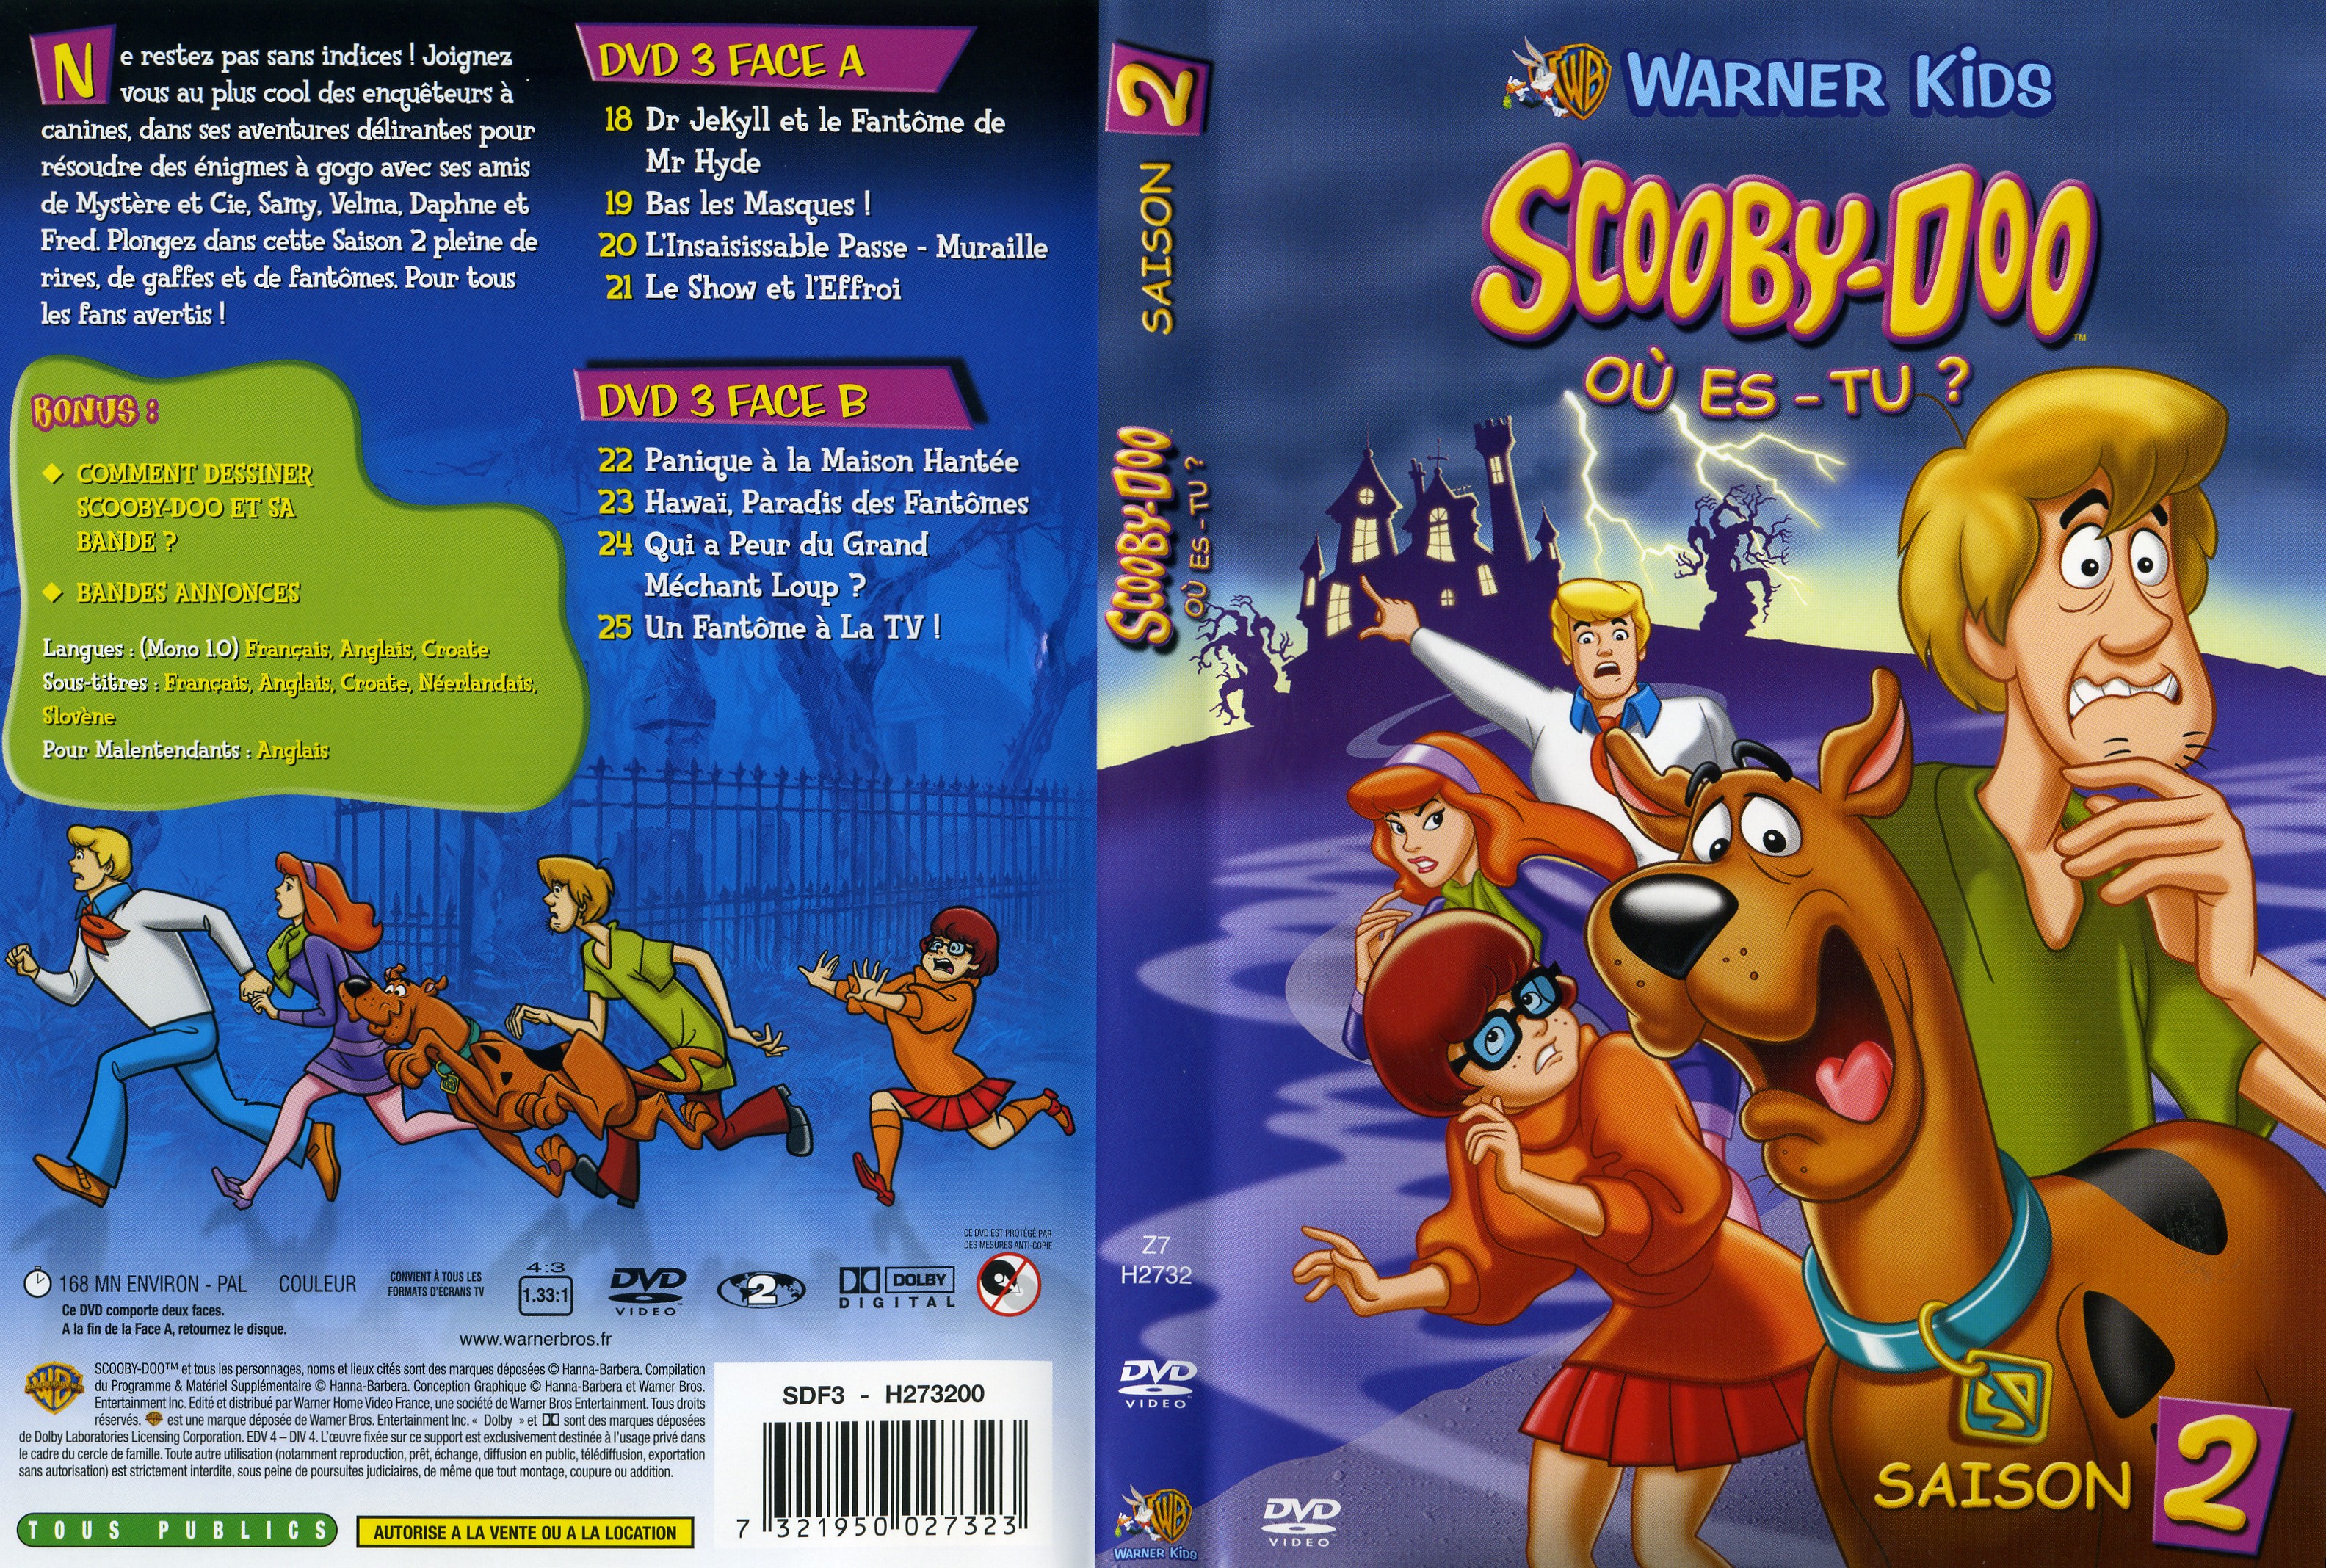 Jaquette DVD Scooby-Doo Ou est-tu  Saison 2